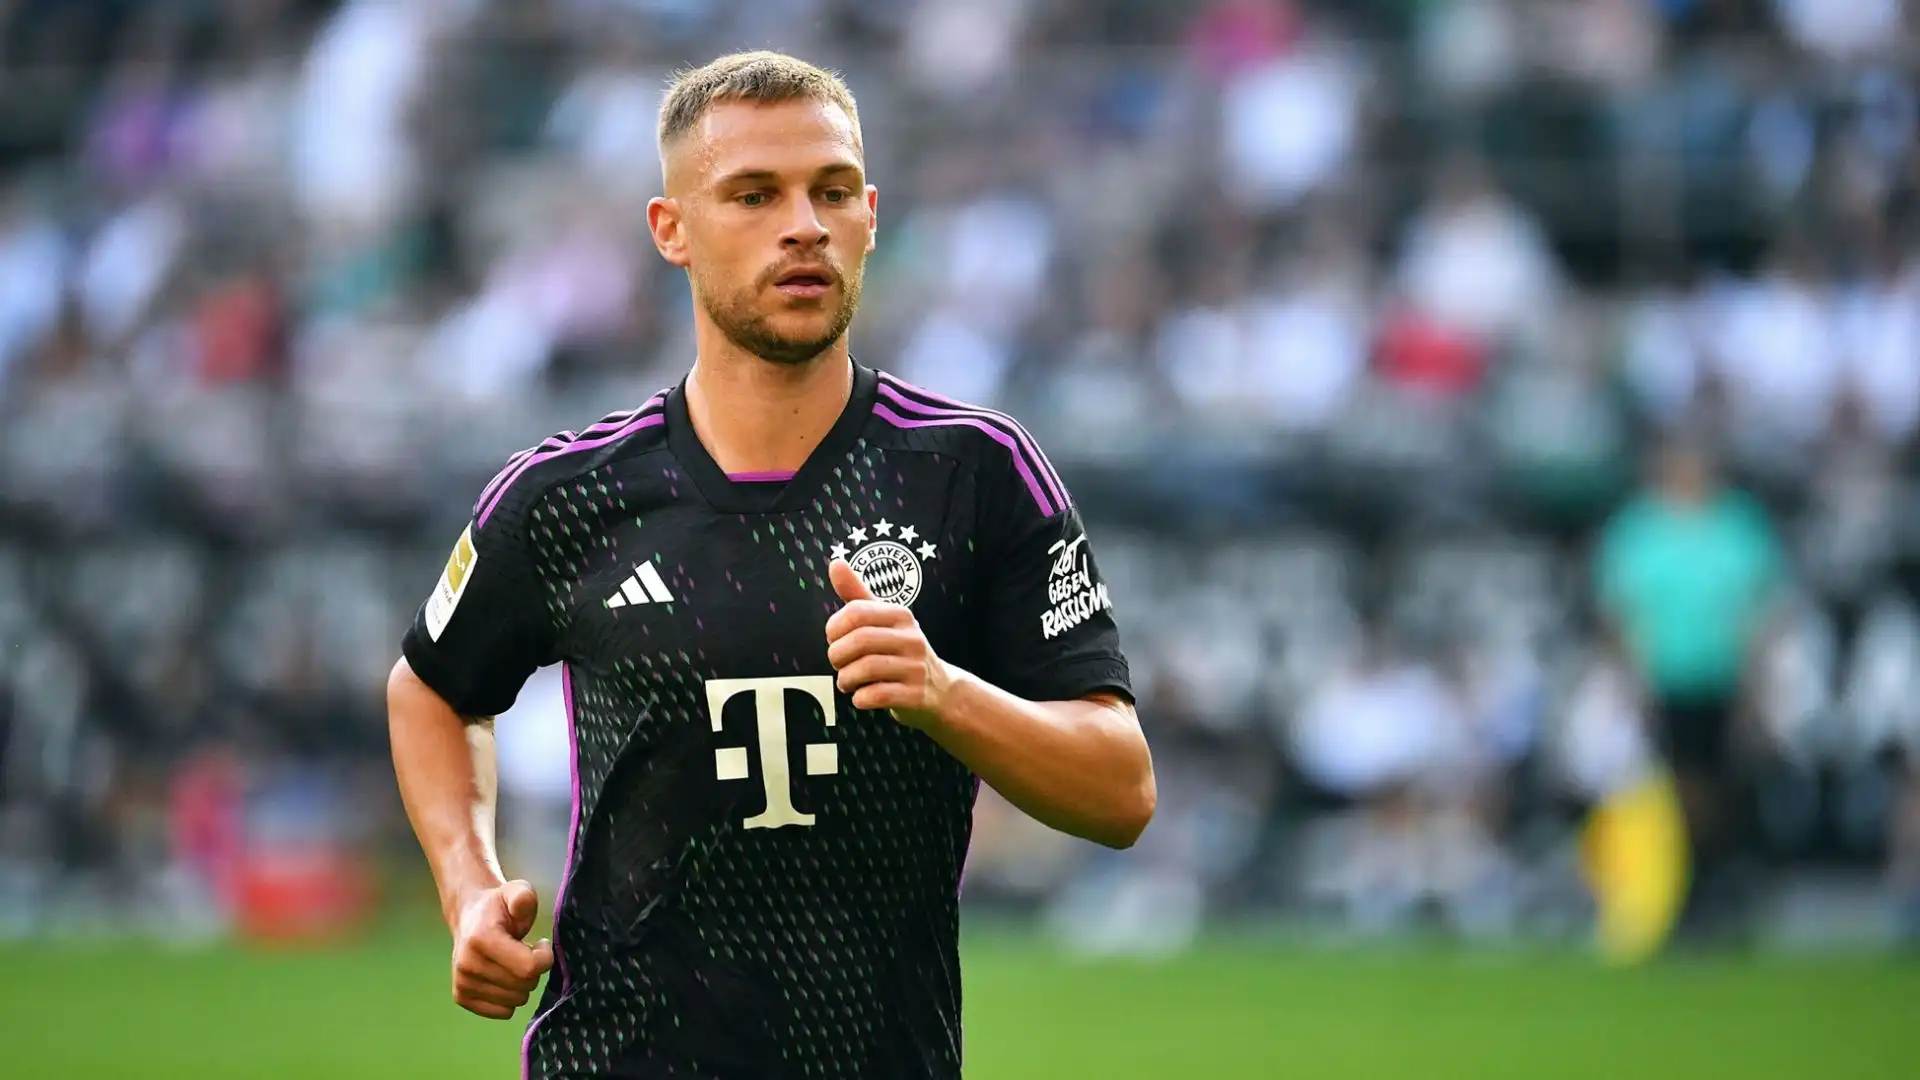 Con 370 presenze, è al ventesimo posto tra i giocatori più presenti nella storia del Bayern